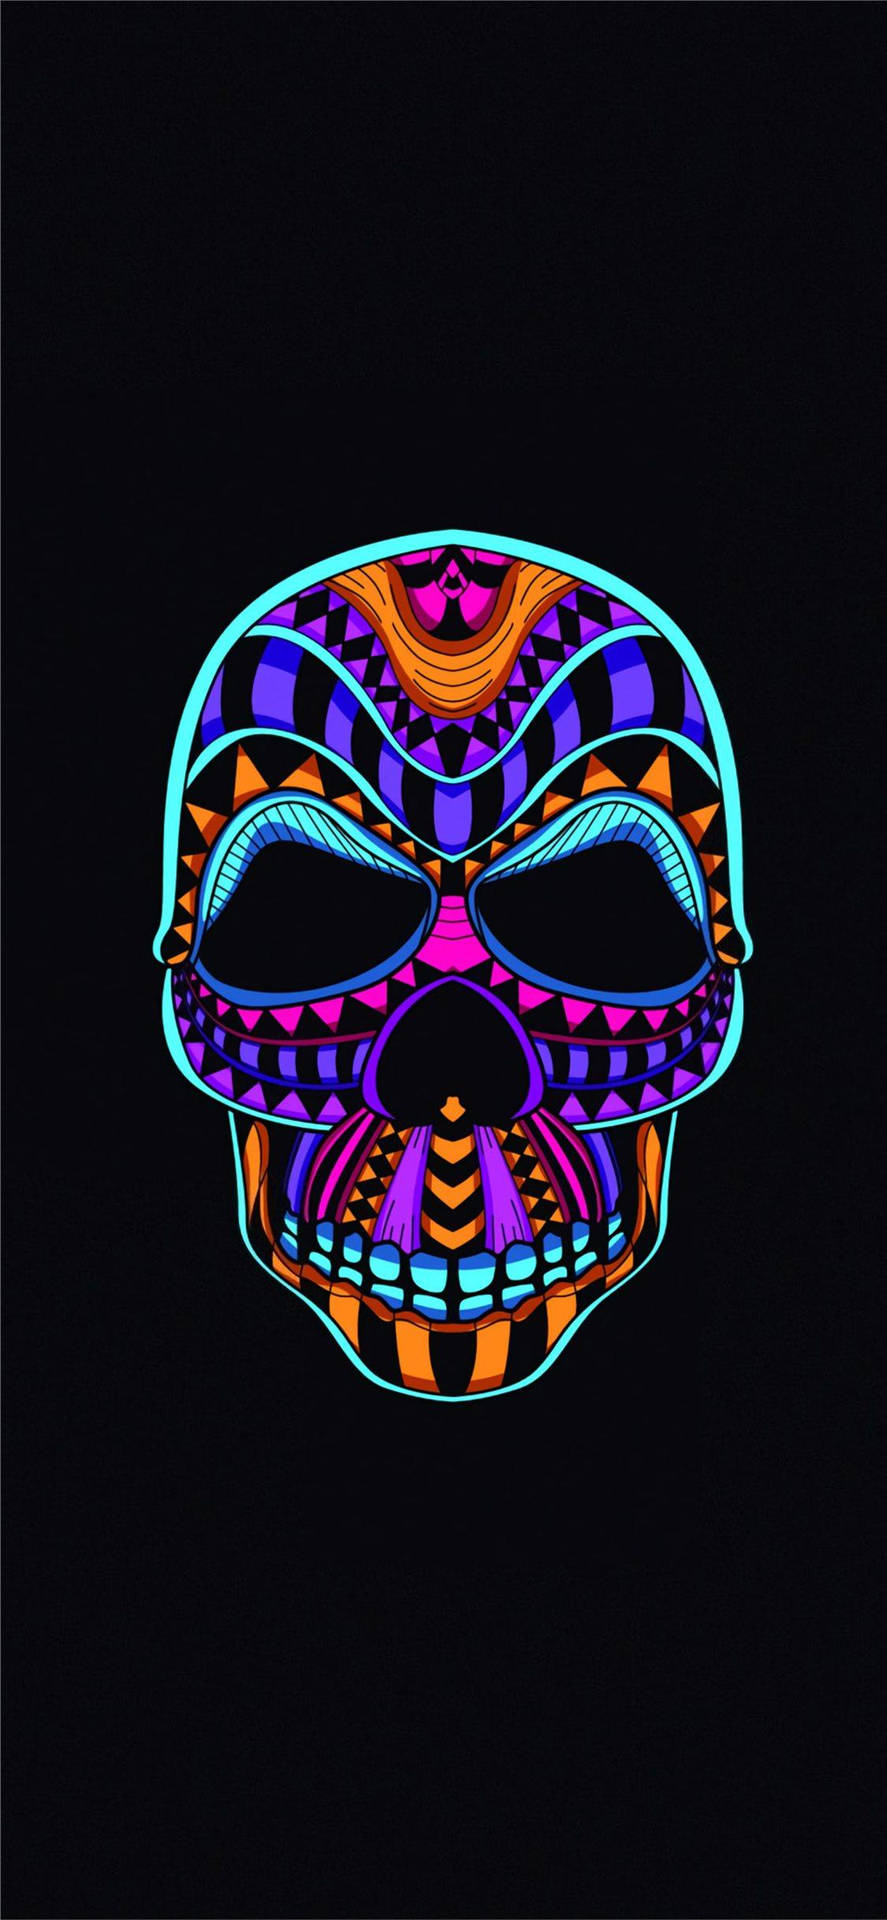 Vibrant Neon Skull On Oled Display Background